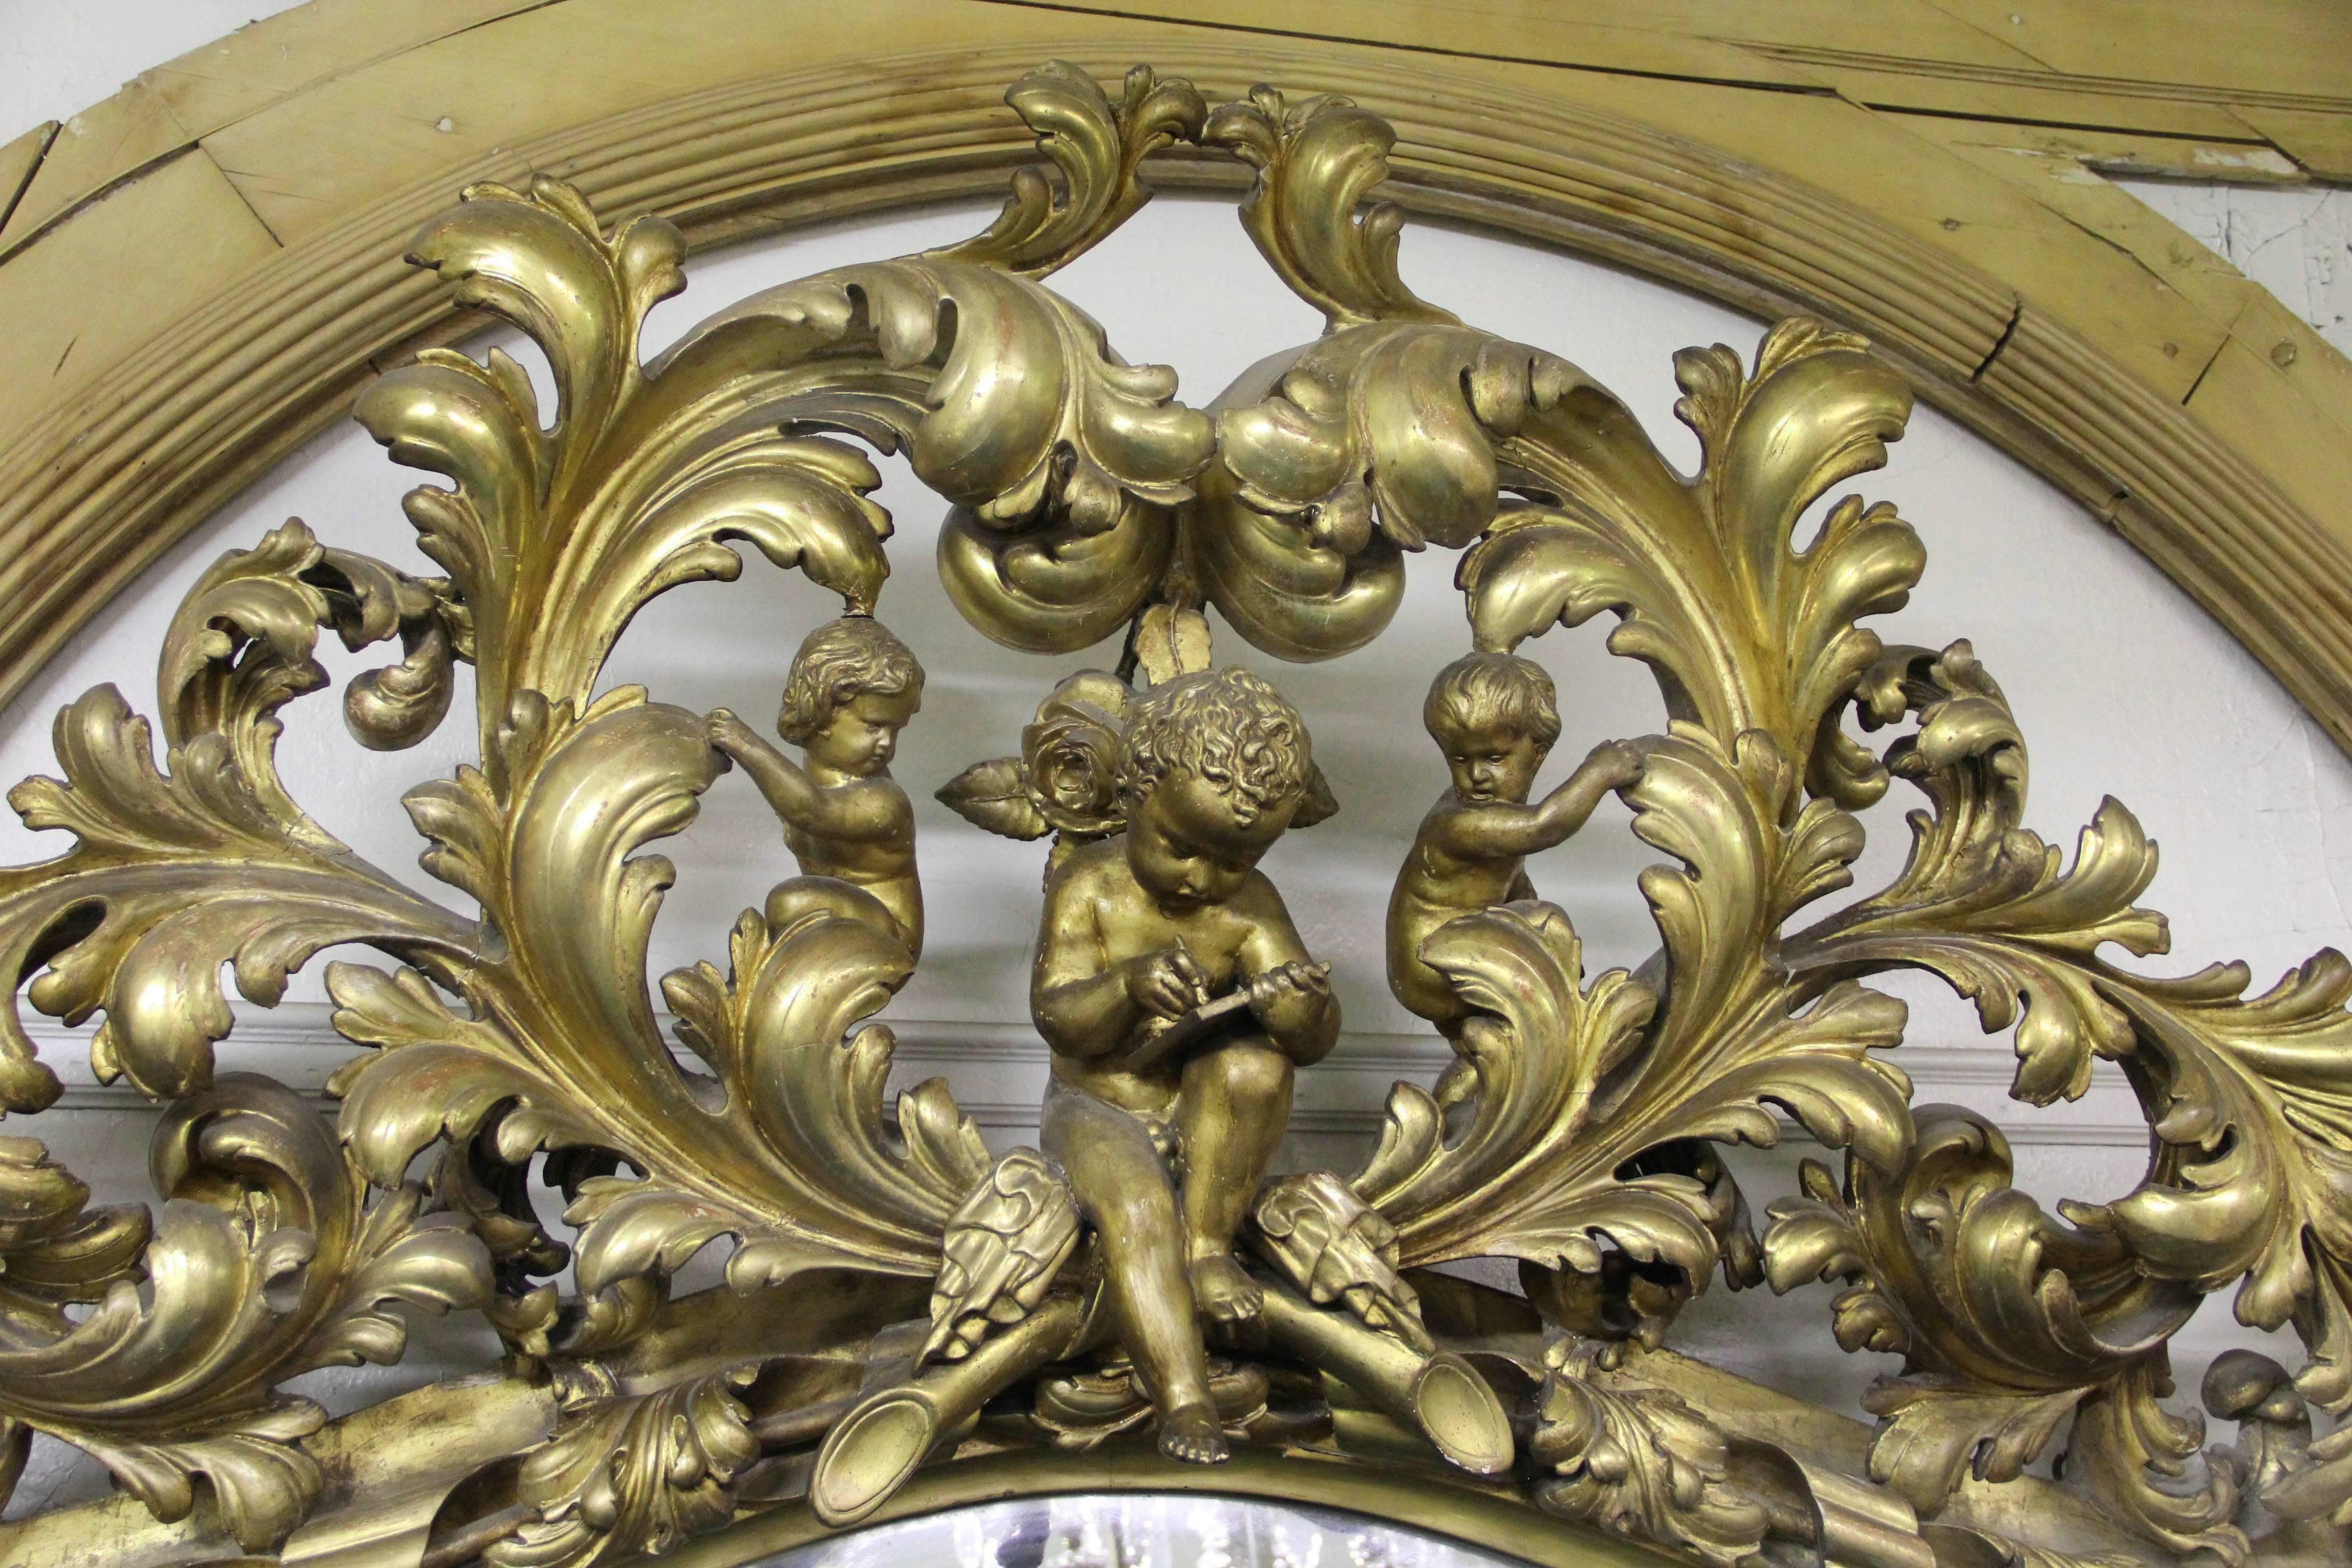 Ein sehr wichtiger Spiegel im Stil des späten 19. Jahrhunderts aus Vergoldung und Gesso.

Der gesamte Rahmen ist außergewöhnlich detailreich geschnitzt. Die Oberseite ist mit einem großen geschnitzten Cherub und zwei Putten umgeben von Blumen und